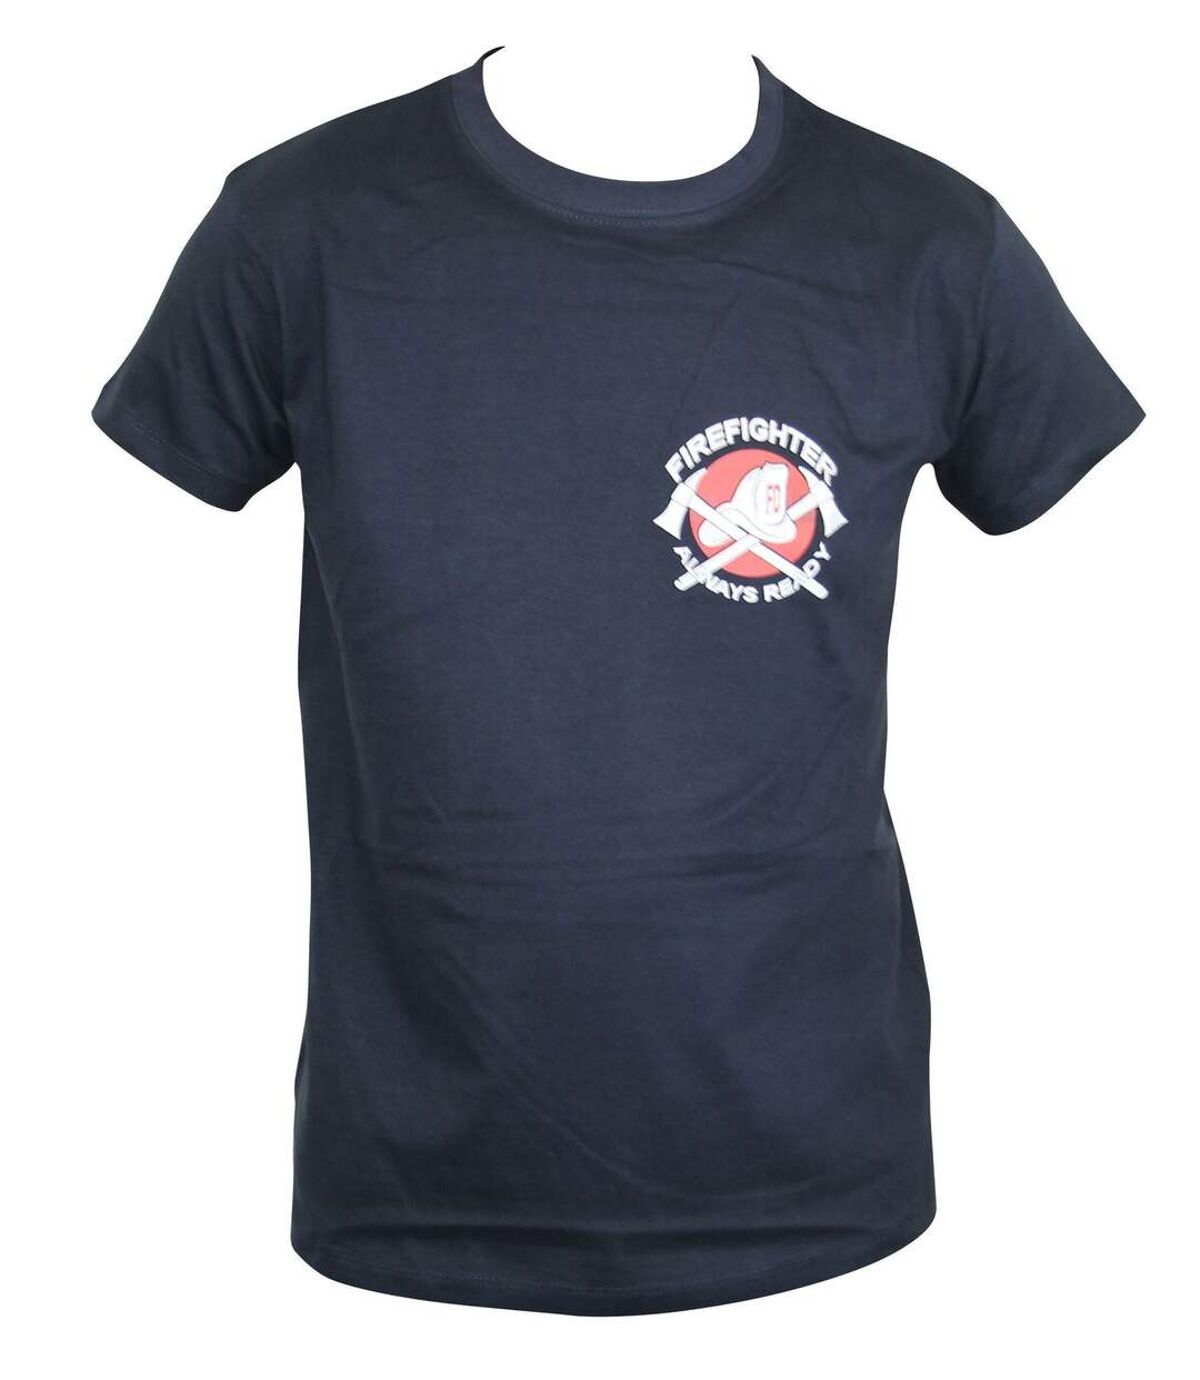 T-shirt homme manches courtes - Pompiers américains - 4016 - bleu marine